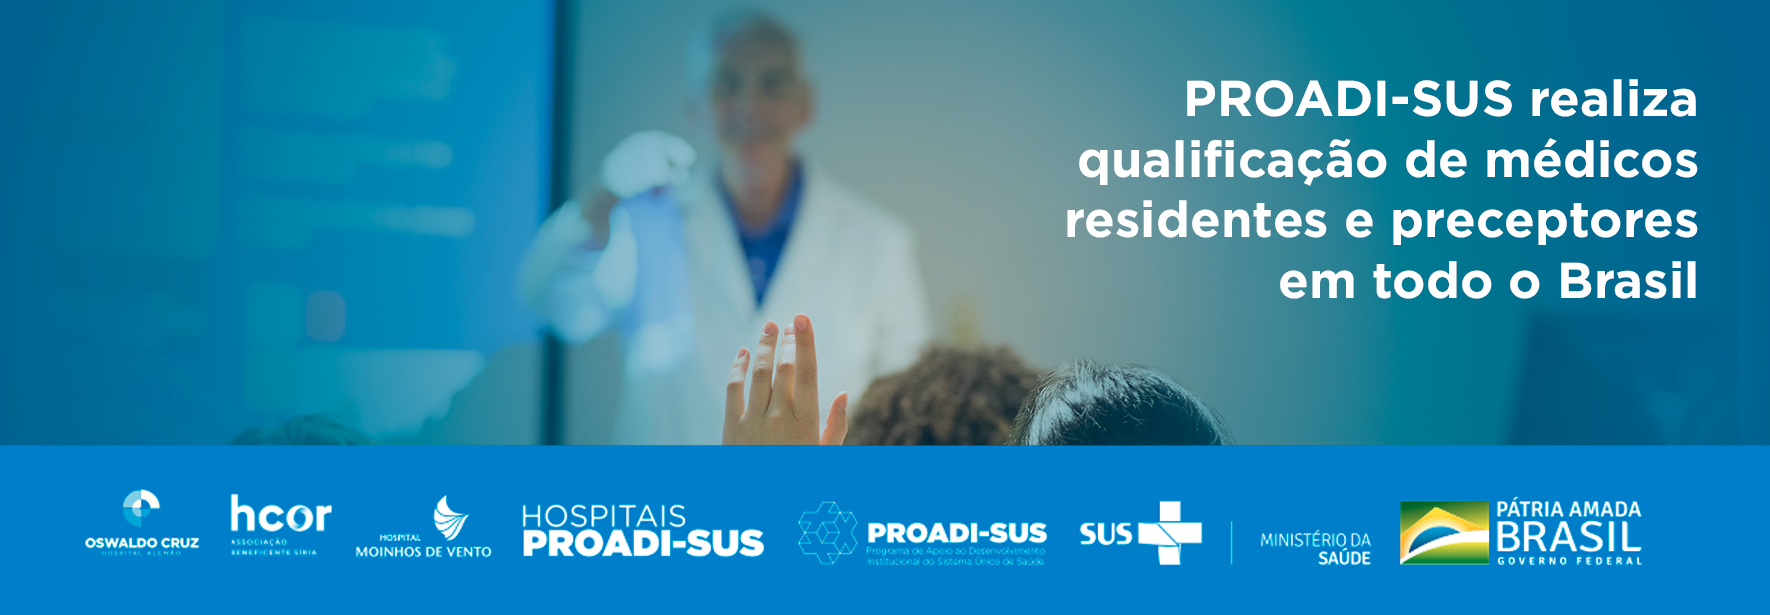 Conheça as iniciativas do PROADI-SUS que realizam a qualificação uni e multiprofissional a médicos residentes e preceptores de todo o Brasil